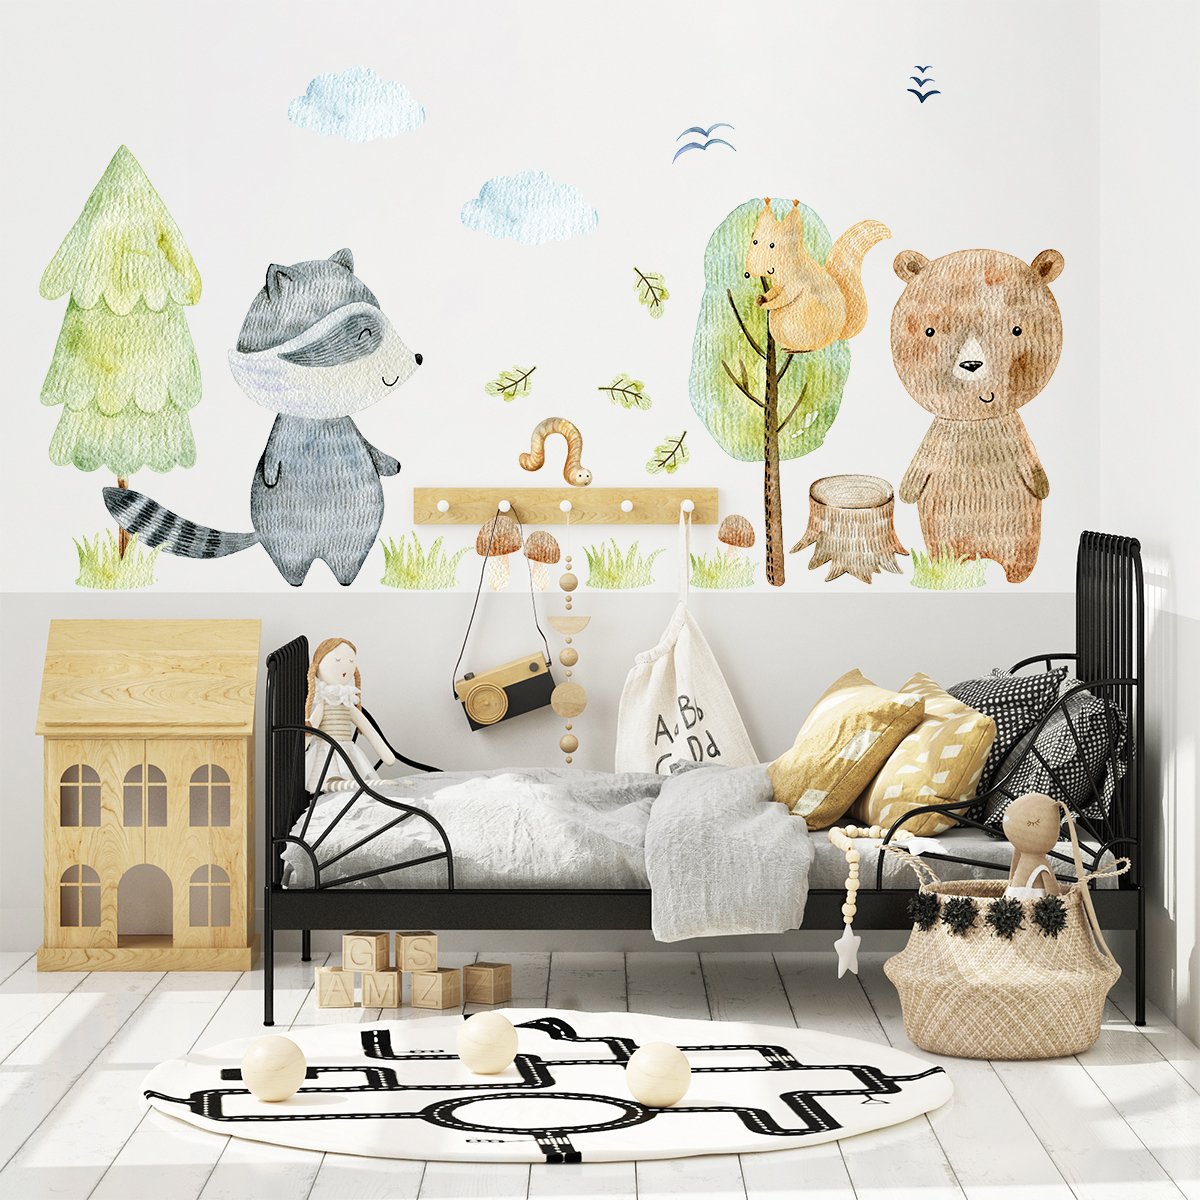 Naklejki na ścianę dla dzieci zielony las i zwierzątka leśne naklejone na ścianie w pokoju czterolatki